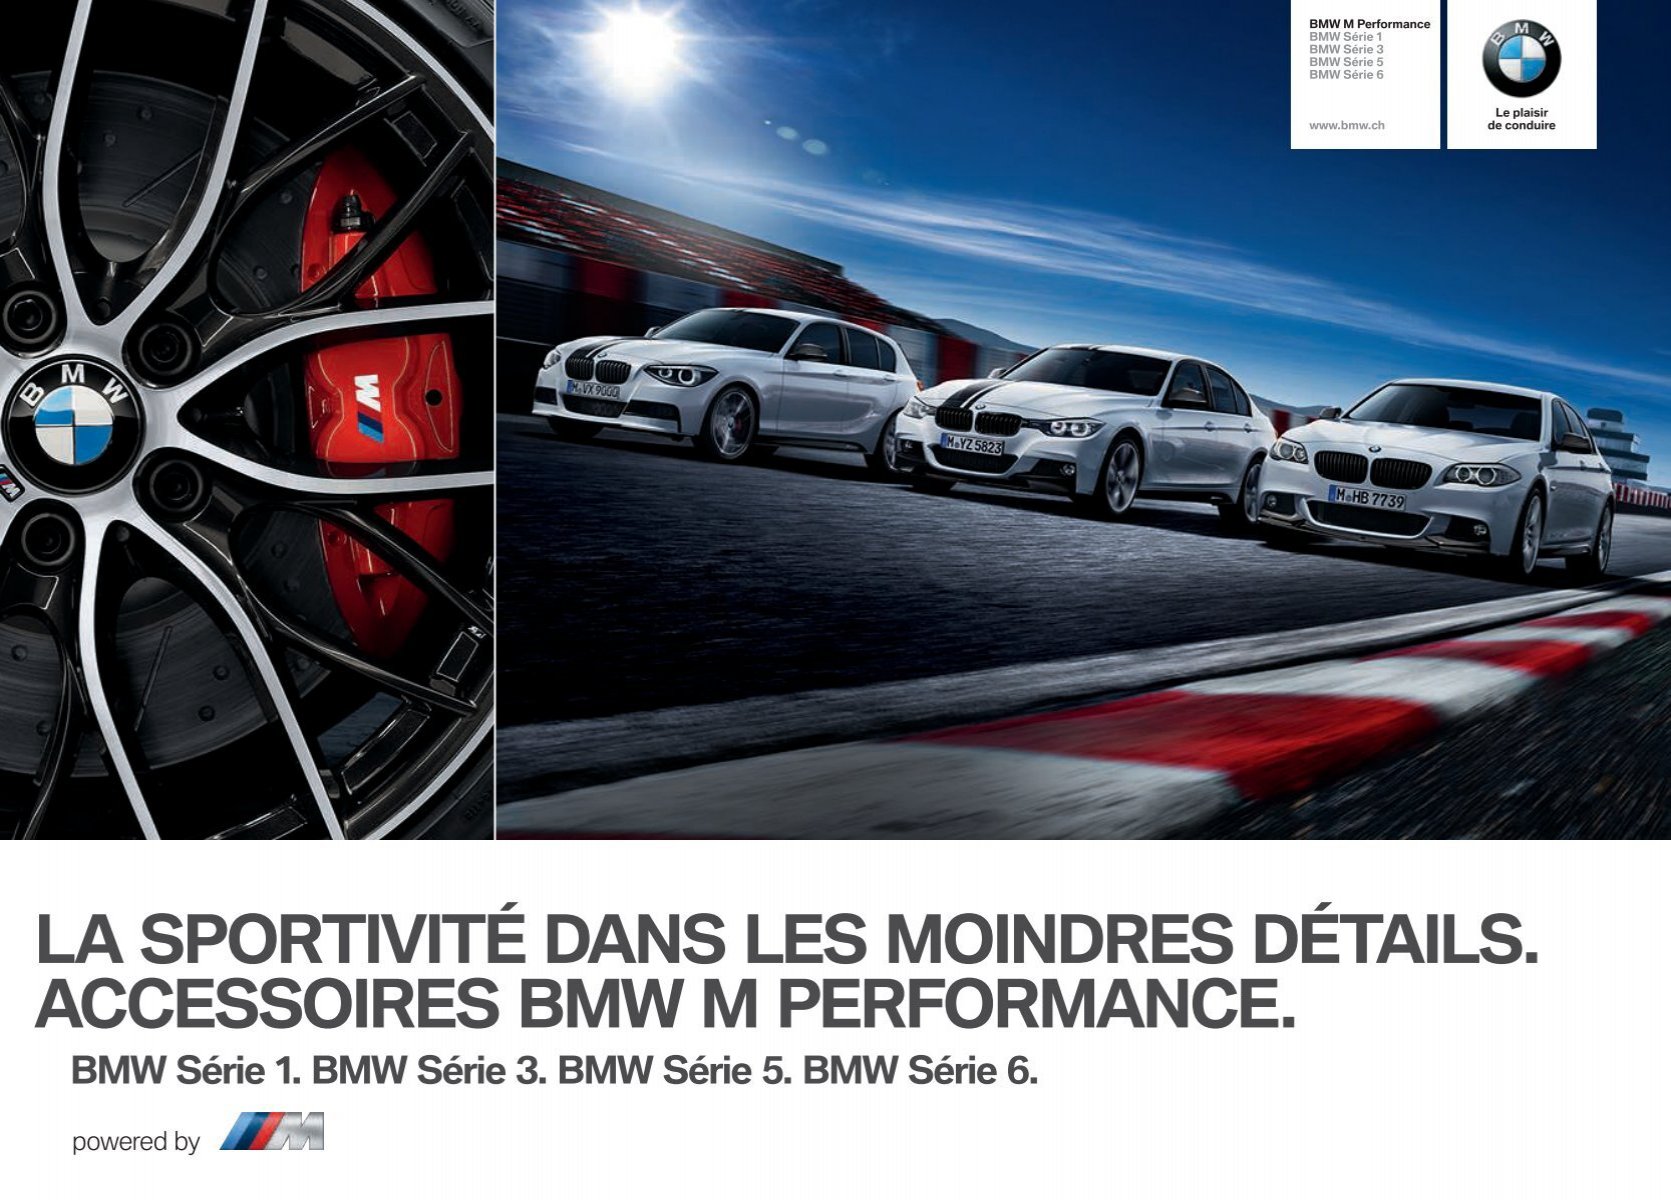 BMW présente les accessoires M Performance destinées à trois de